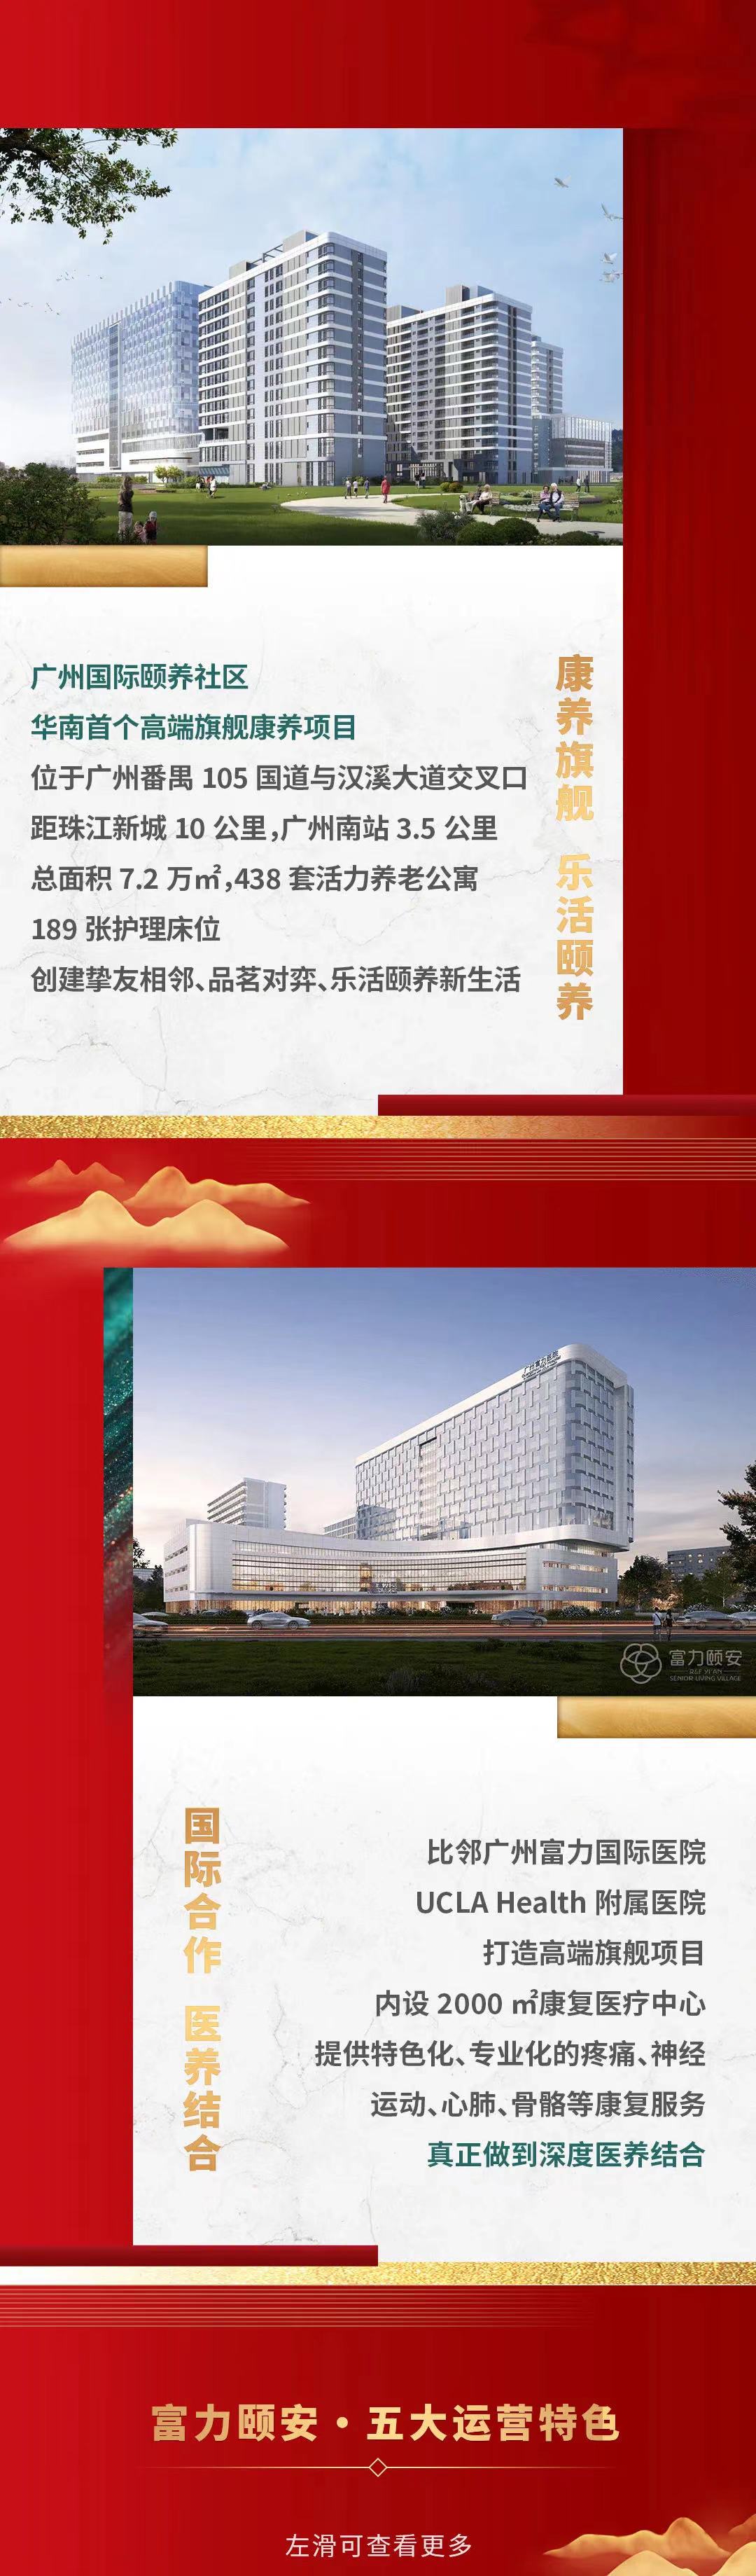 广州现代化养老院一览表名单